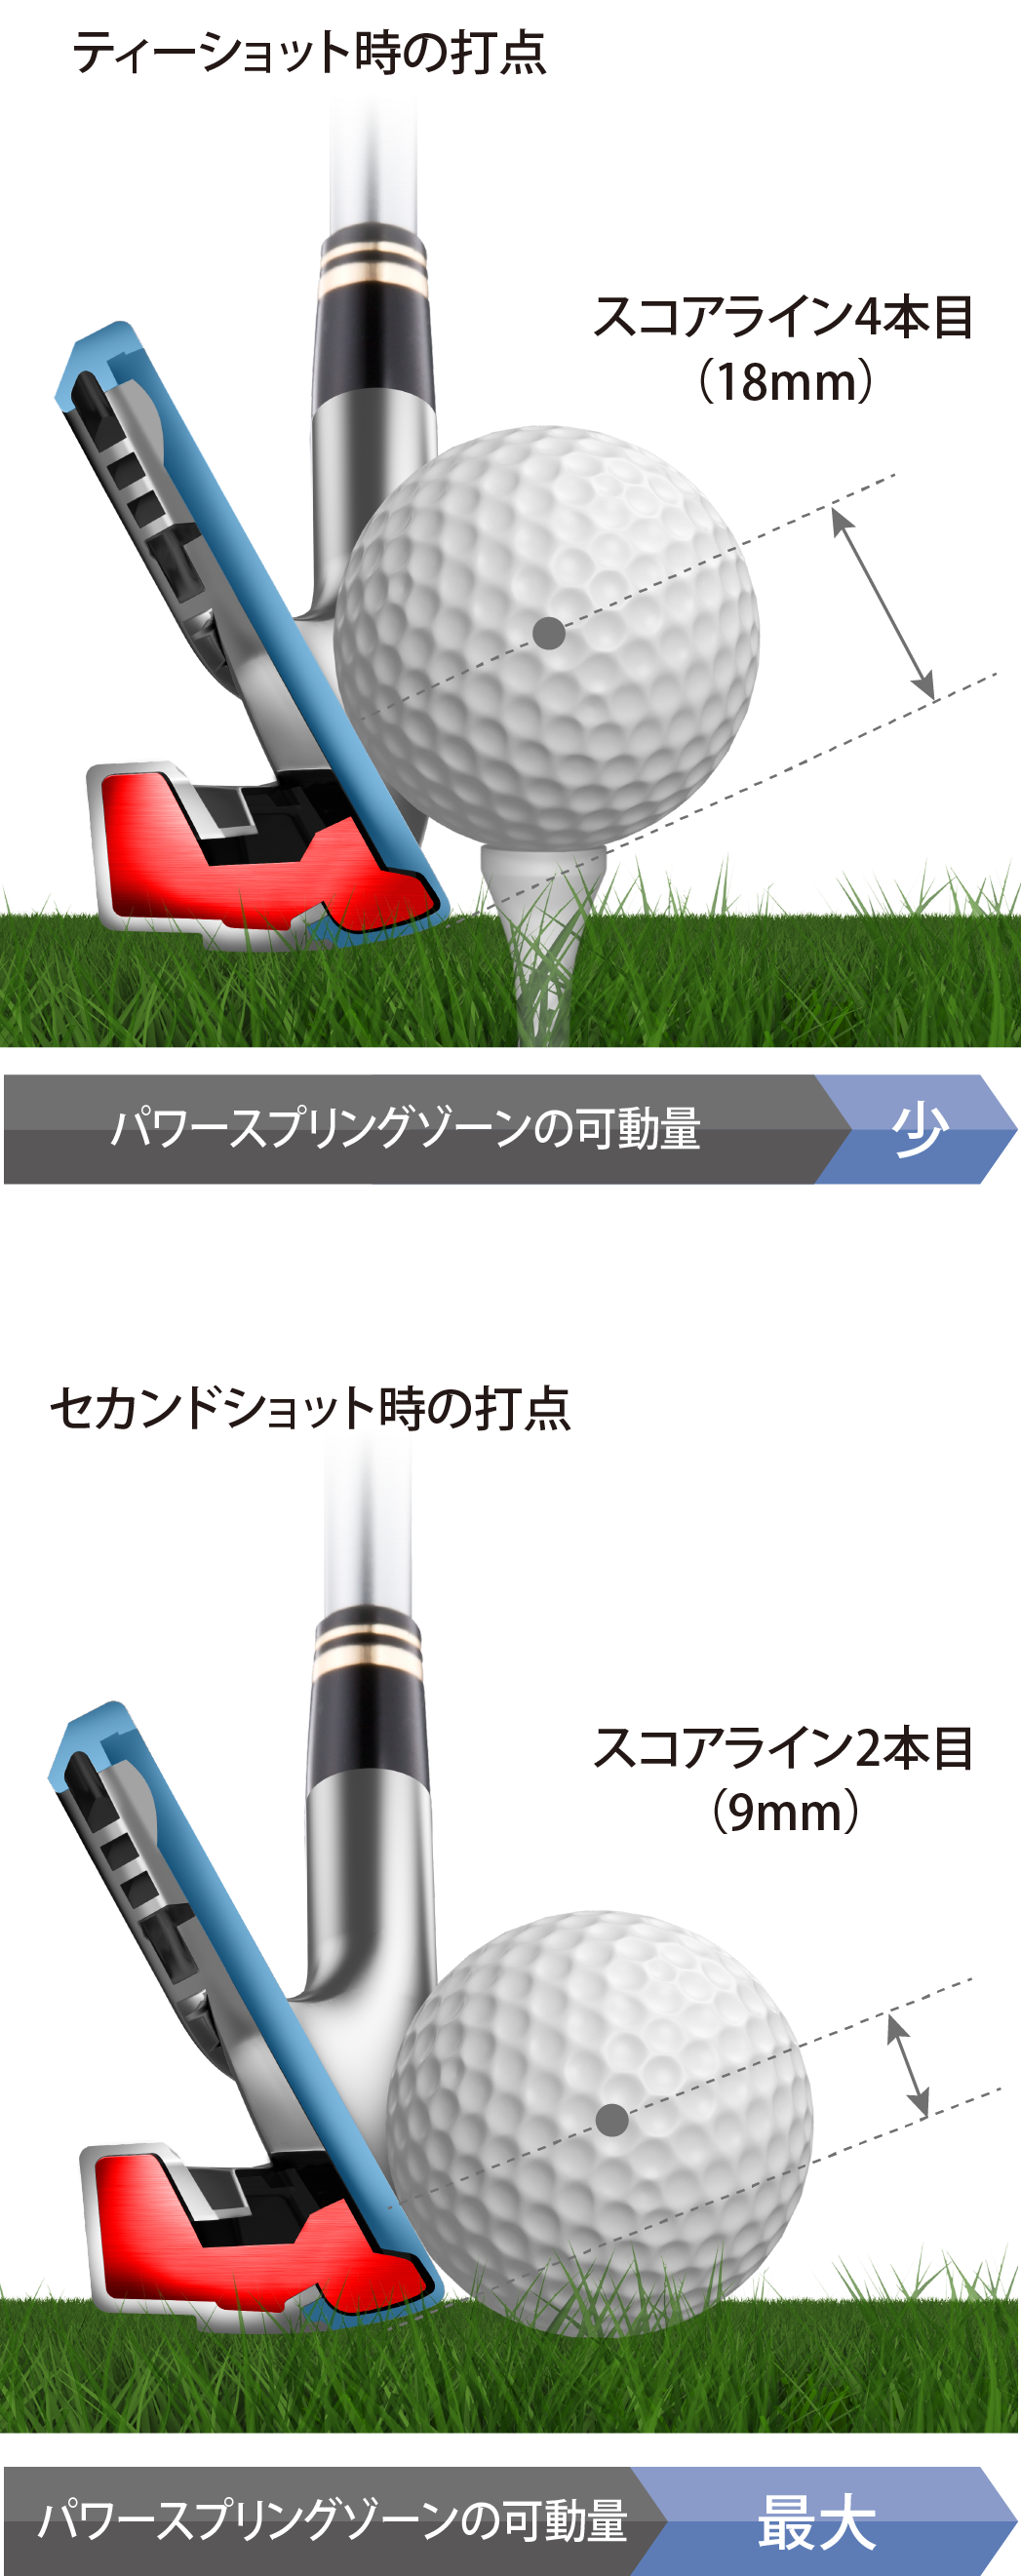 Ryoma Golf Dsi For Iron メカニズム